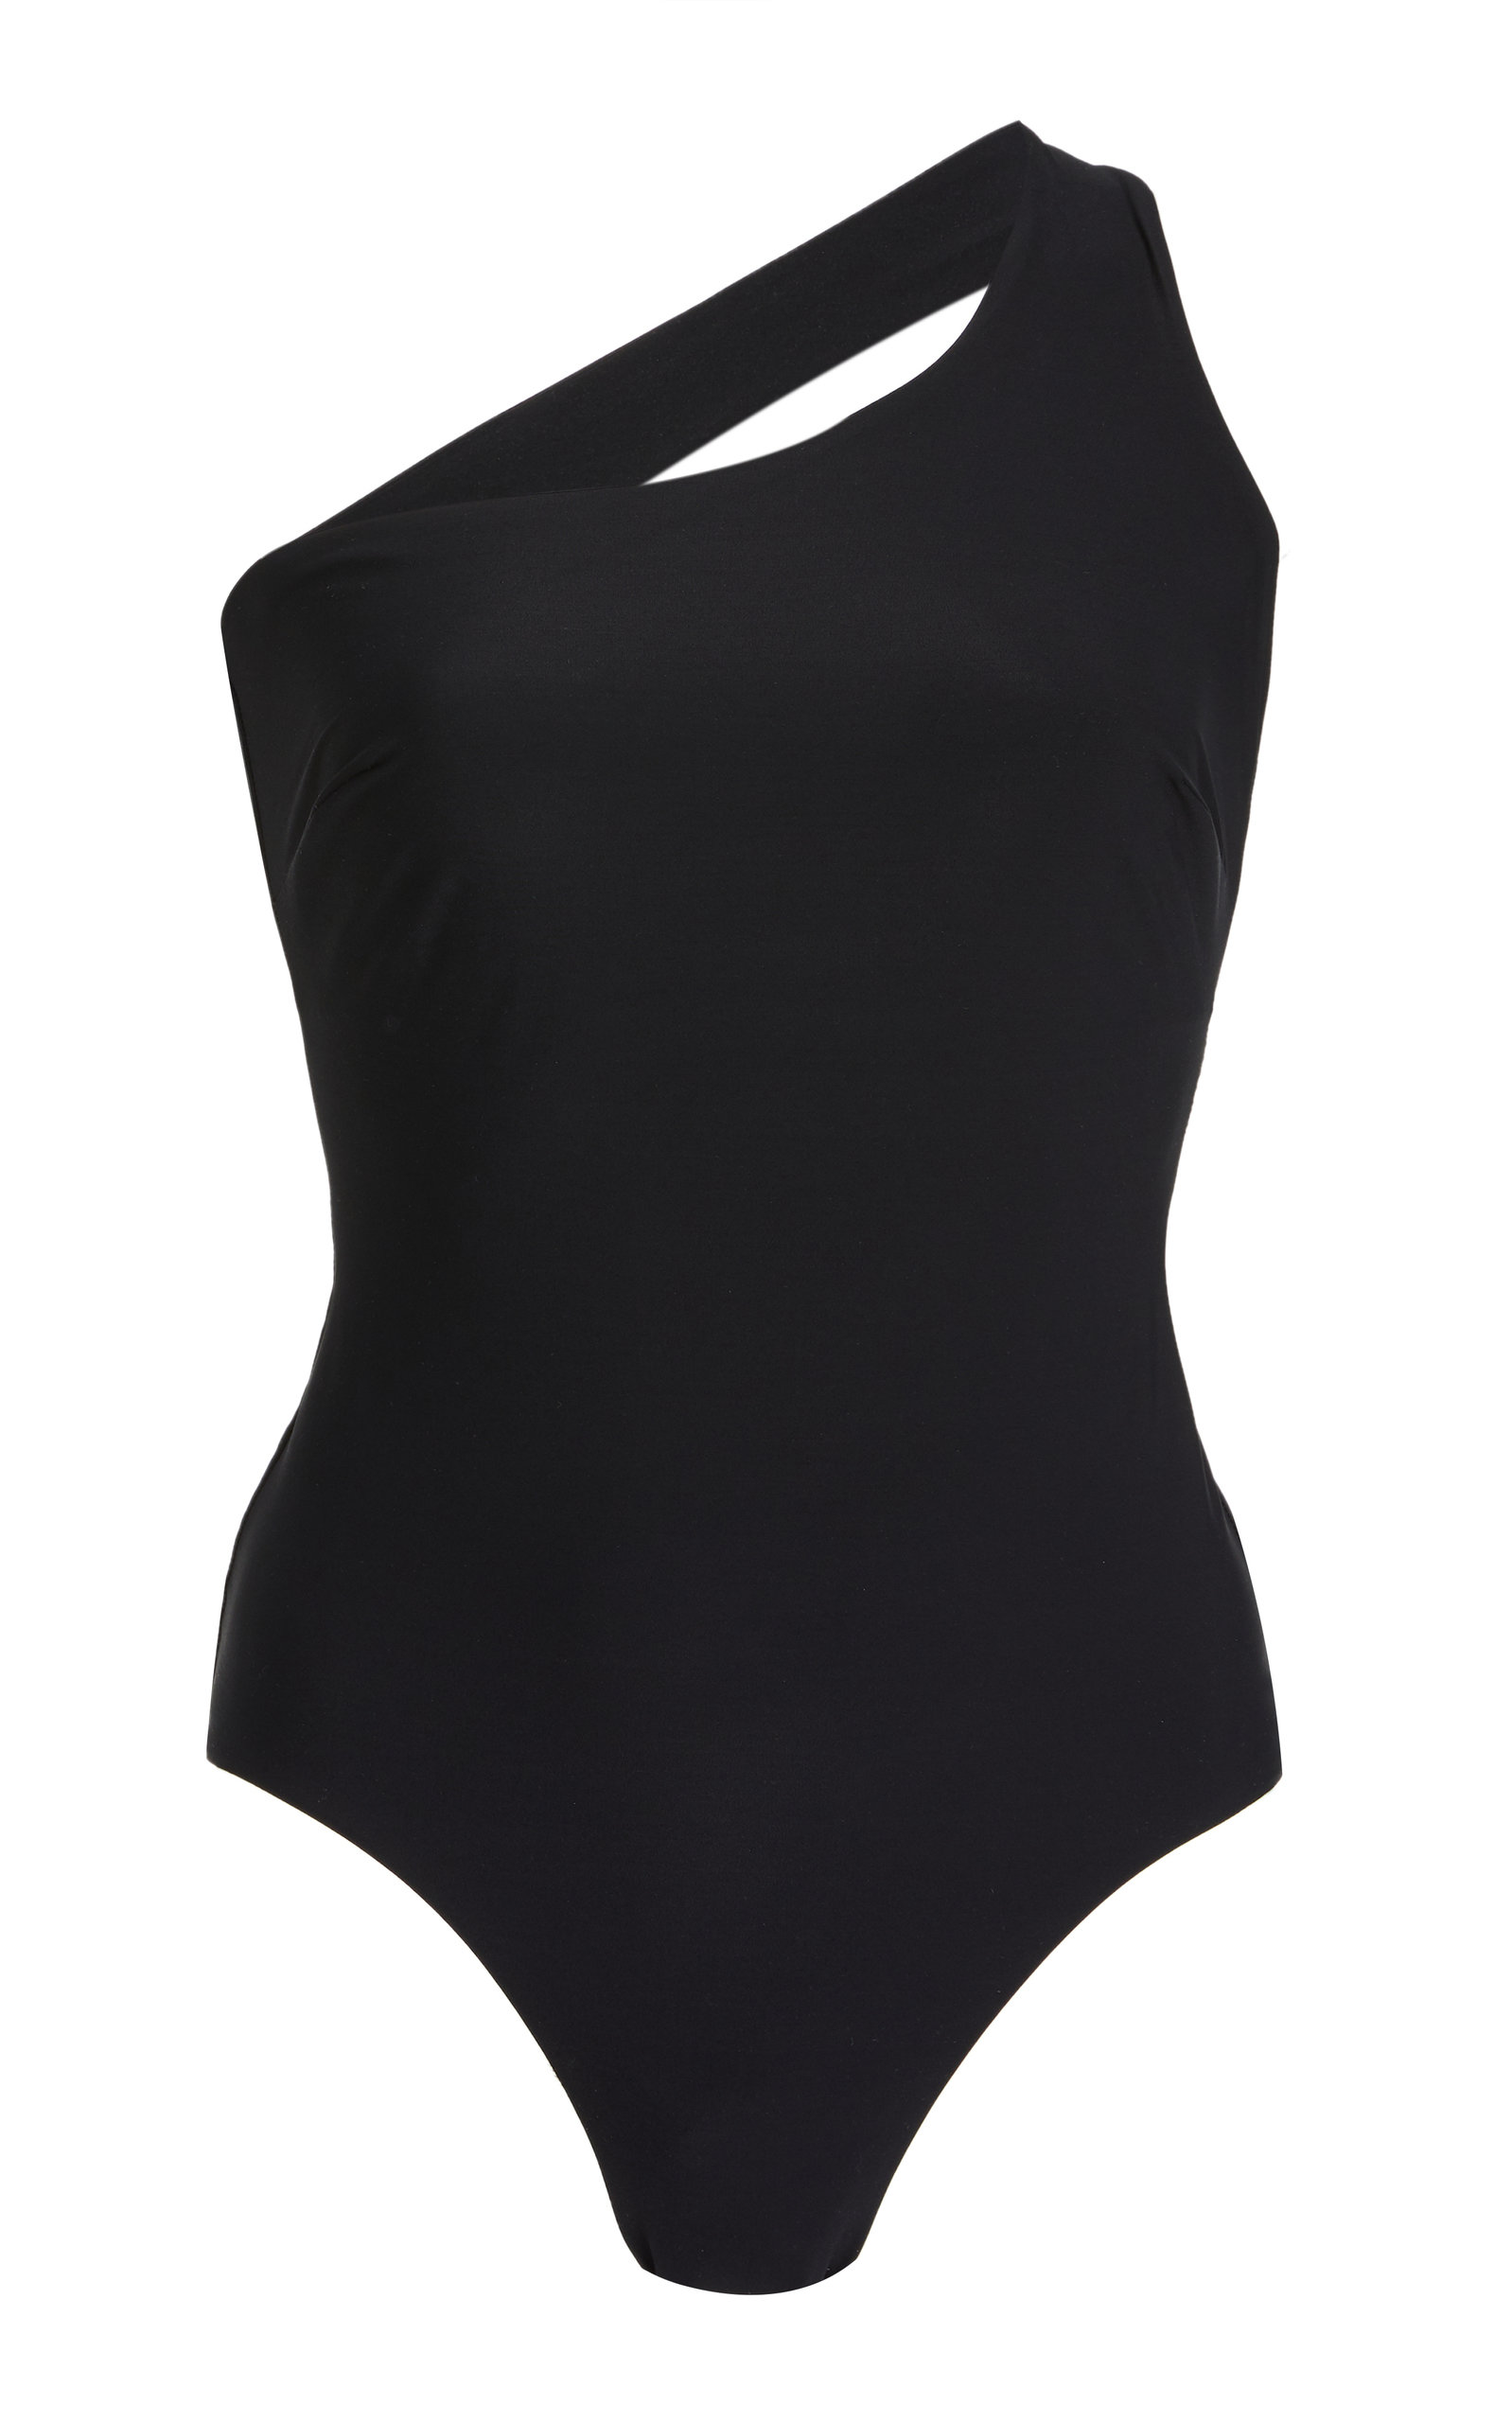 BONDI BORNBONDI BORN - Women's James One-Piece Swimsuit - Black - Moda ...